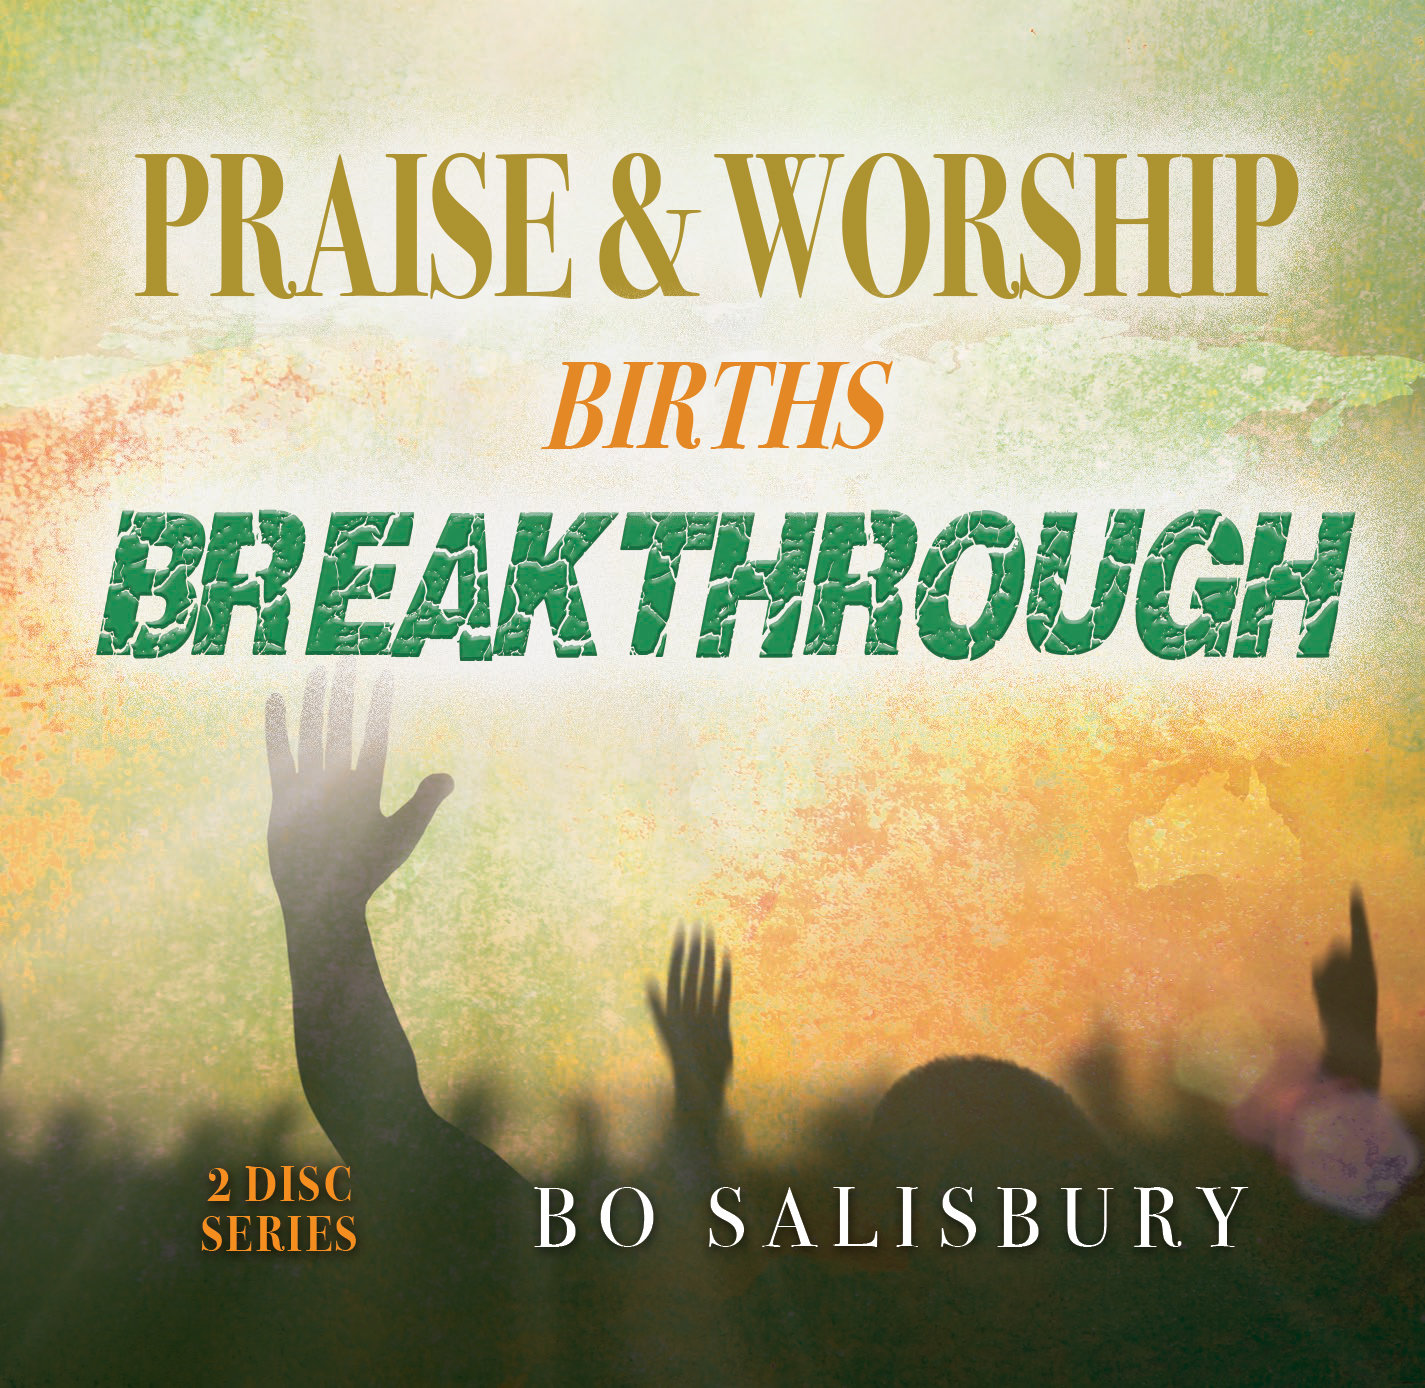 Praise & Worship Births Breakthrough (MP3 download)